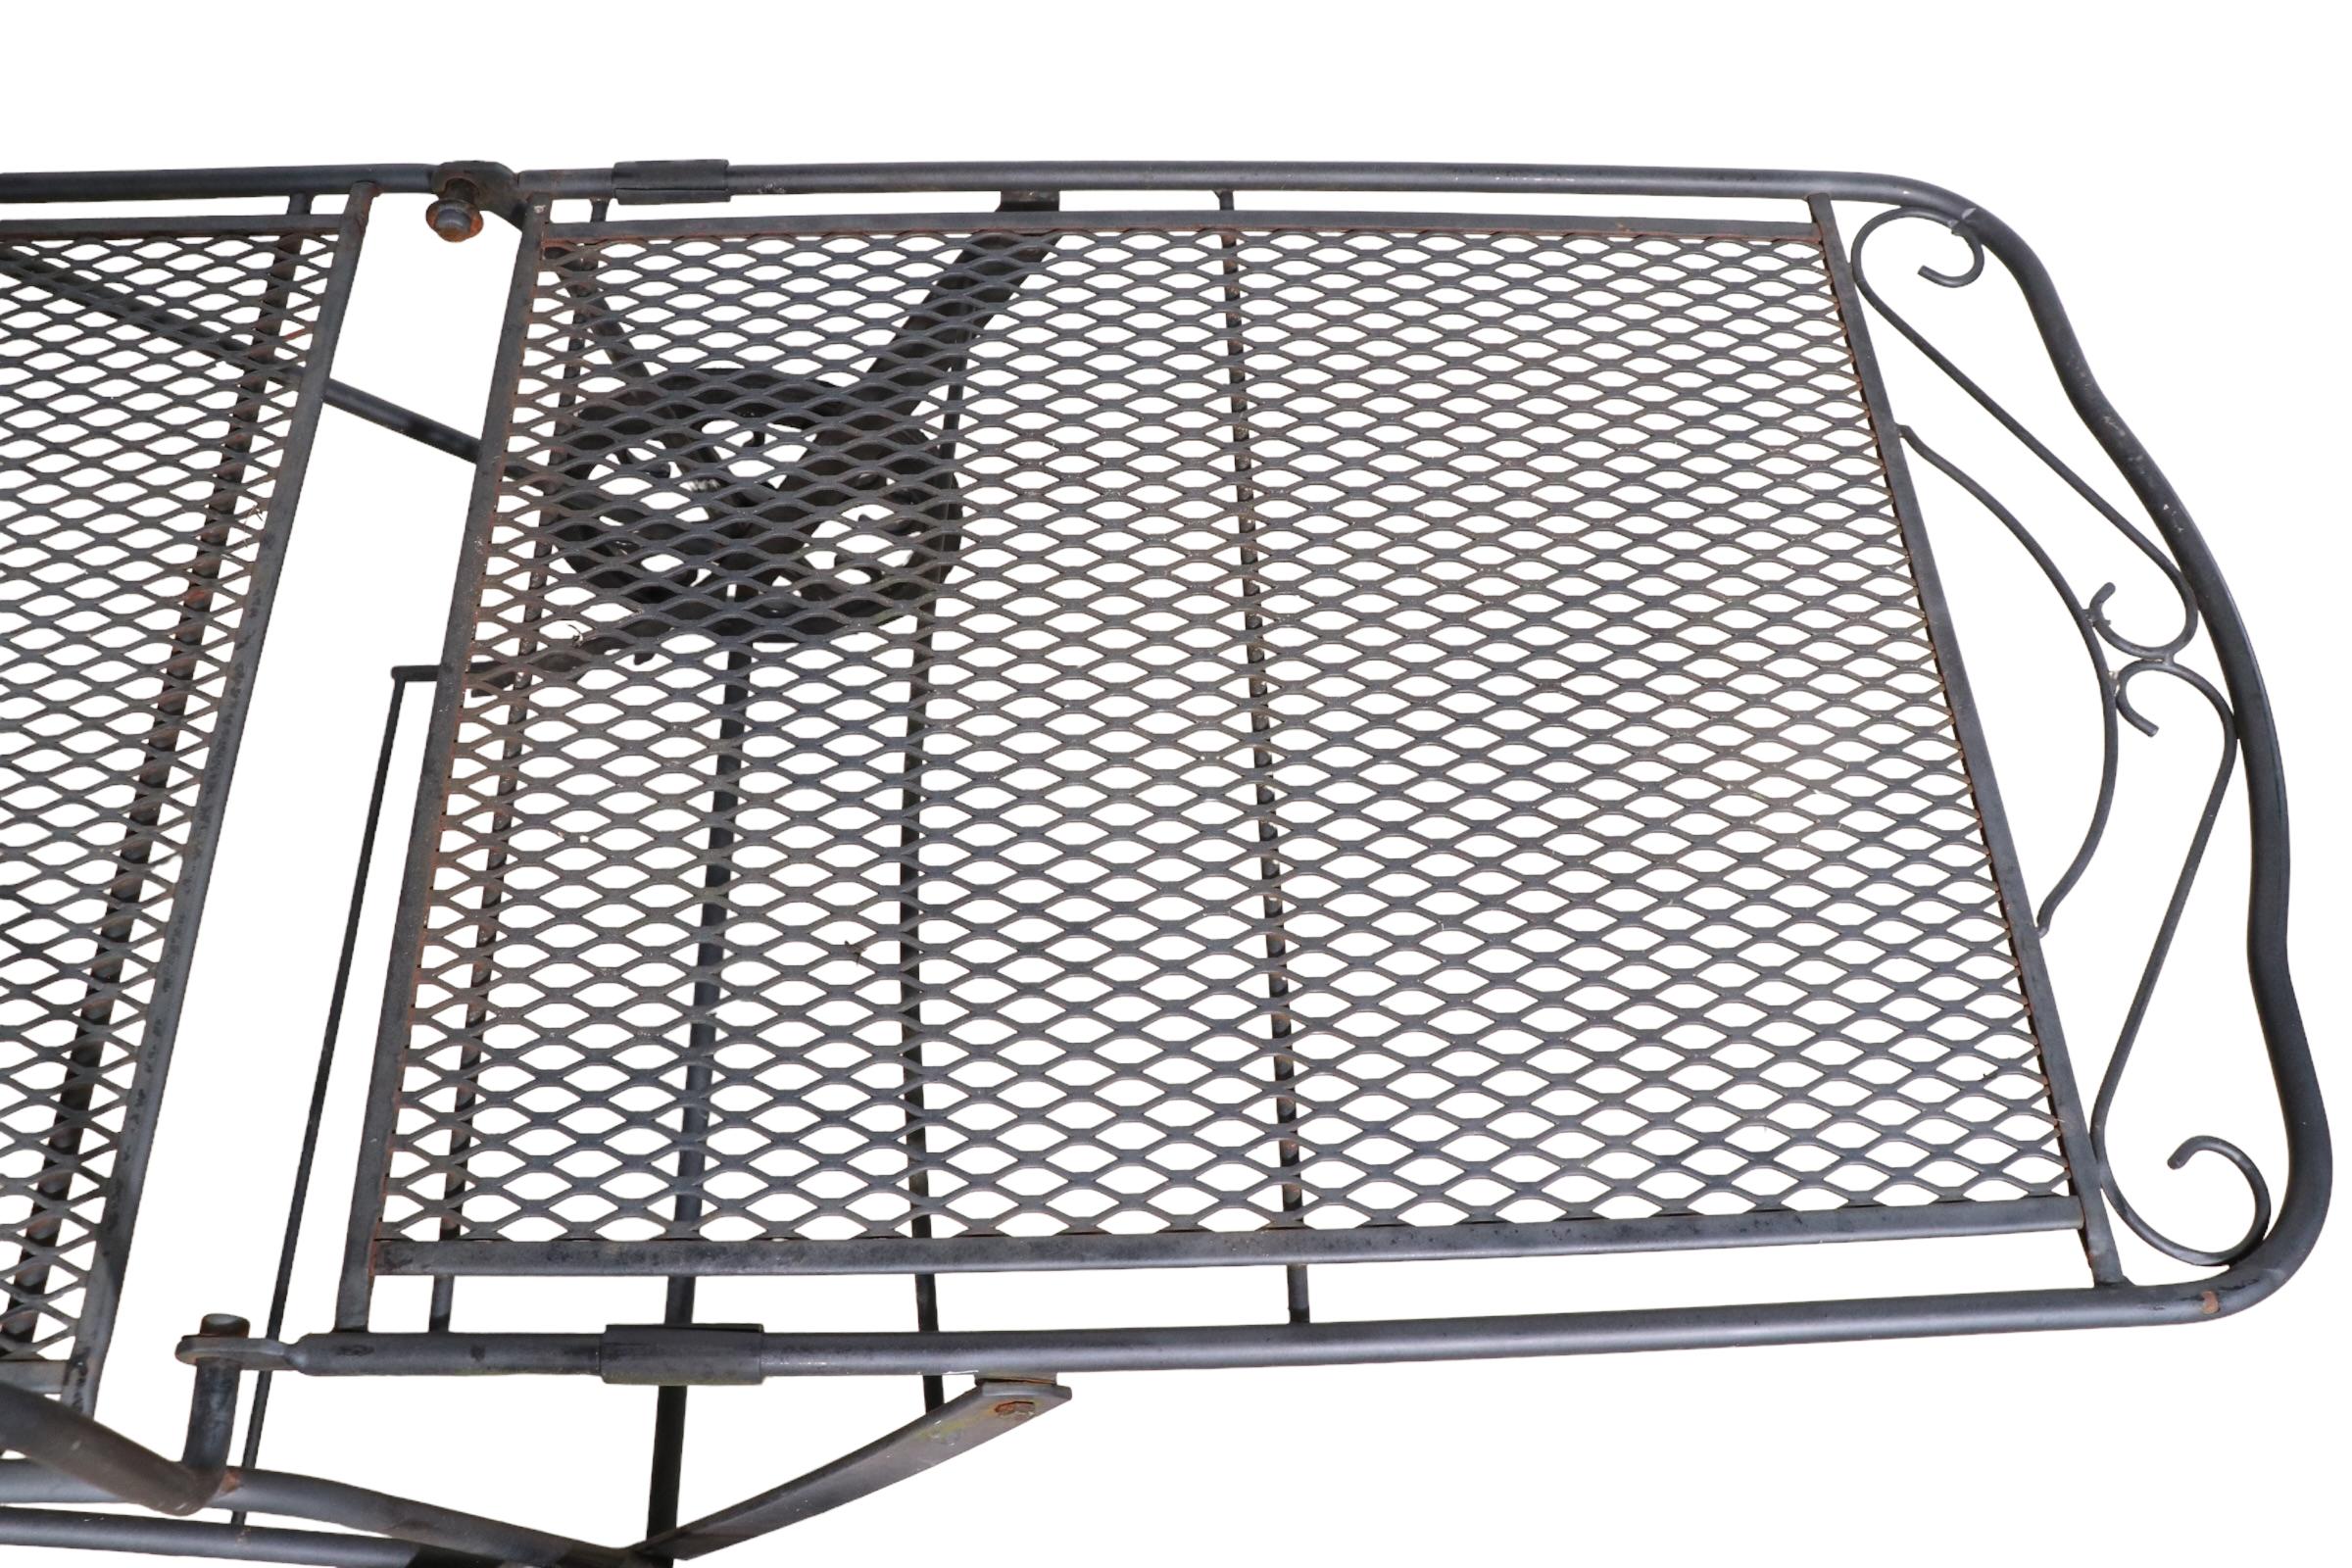 Élégante chaise longue réglable en fer forgé et en maille métallique attribuée à la Woodard Furniture Company. La chaise est dotée d'un dossier inclinable et de roues permettant de la déplacer facilement. Parfait pour le bord de la piscine, le patio